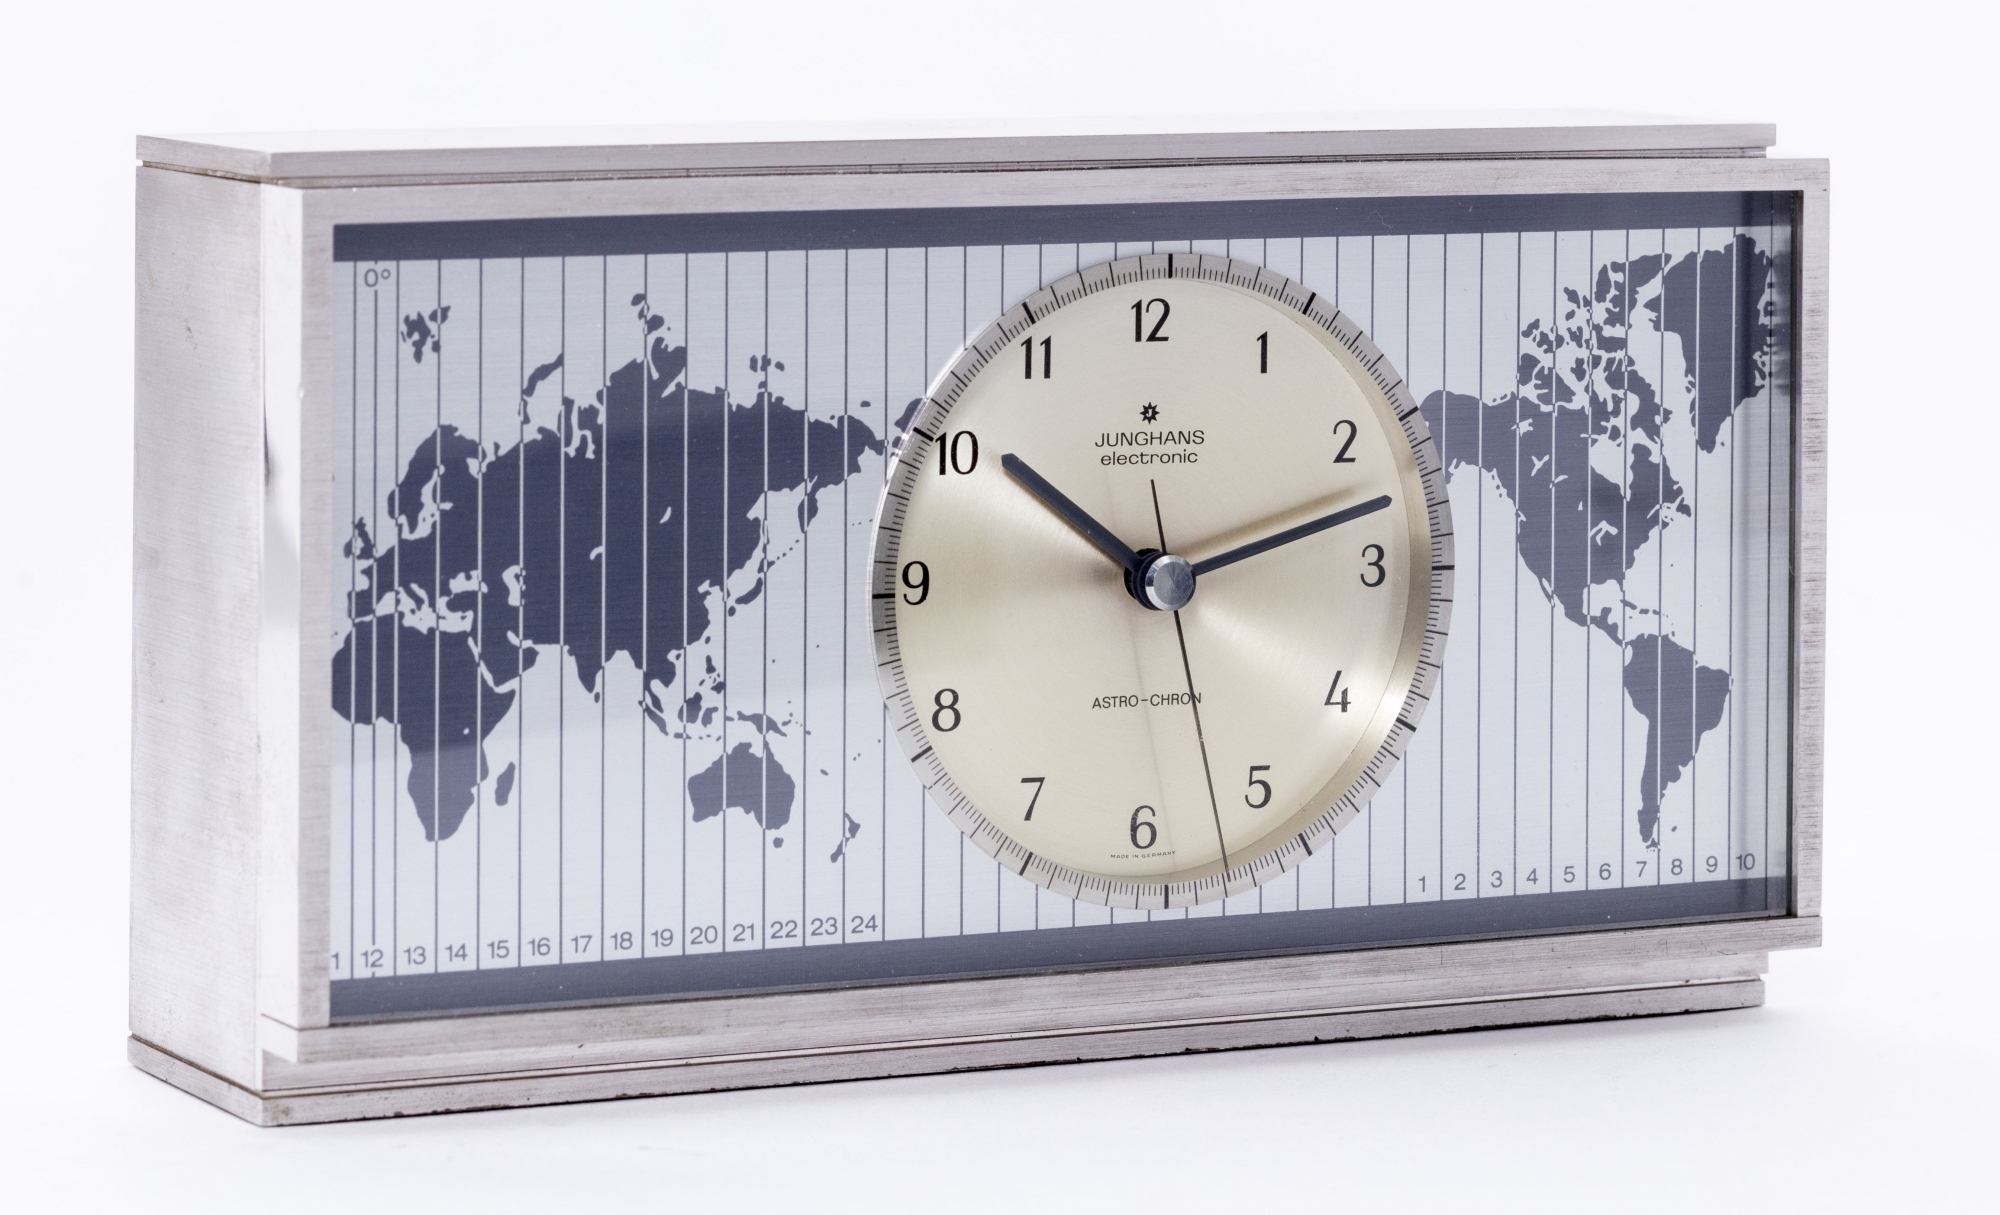 Une des premières horloges à quartz: pendule Junghans Astro-Chron, 1967.